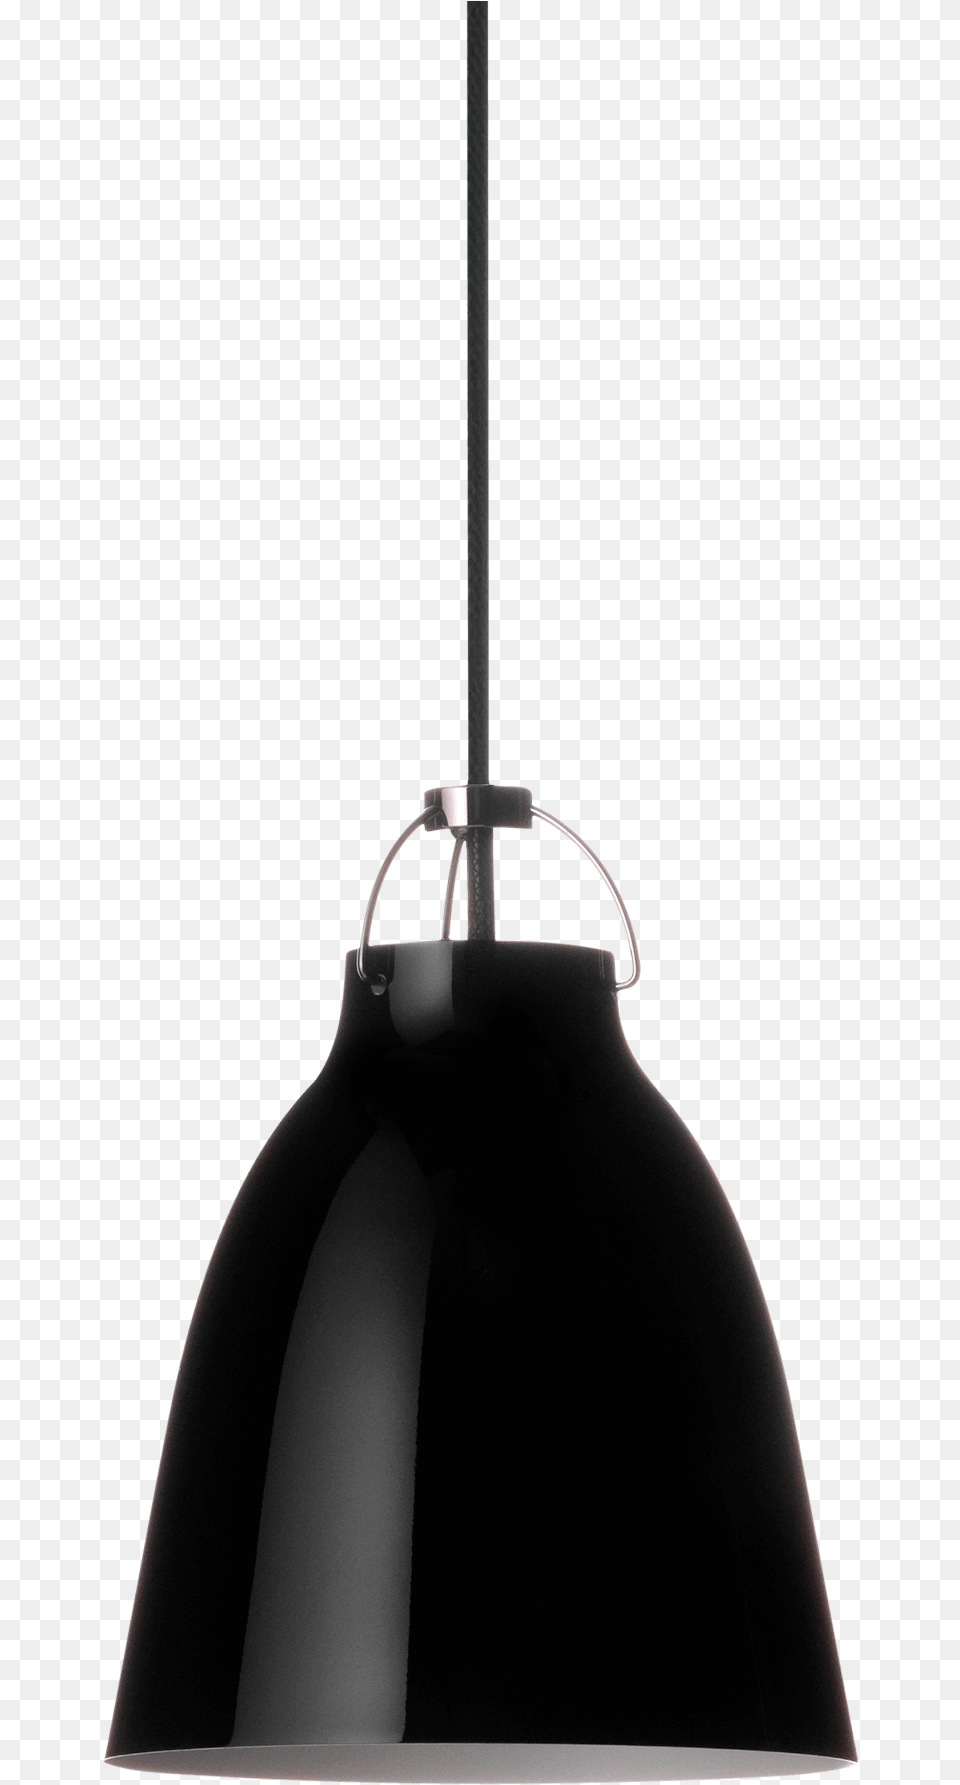 Fritz Hansen Lighting Caravaggio Black Black P1 Fritz Hansen Caravaggio, Lamp, Lampshade Png Image